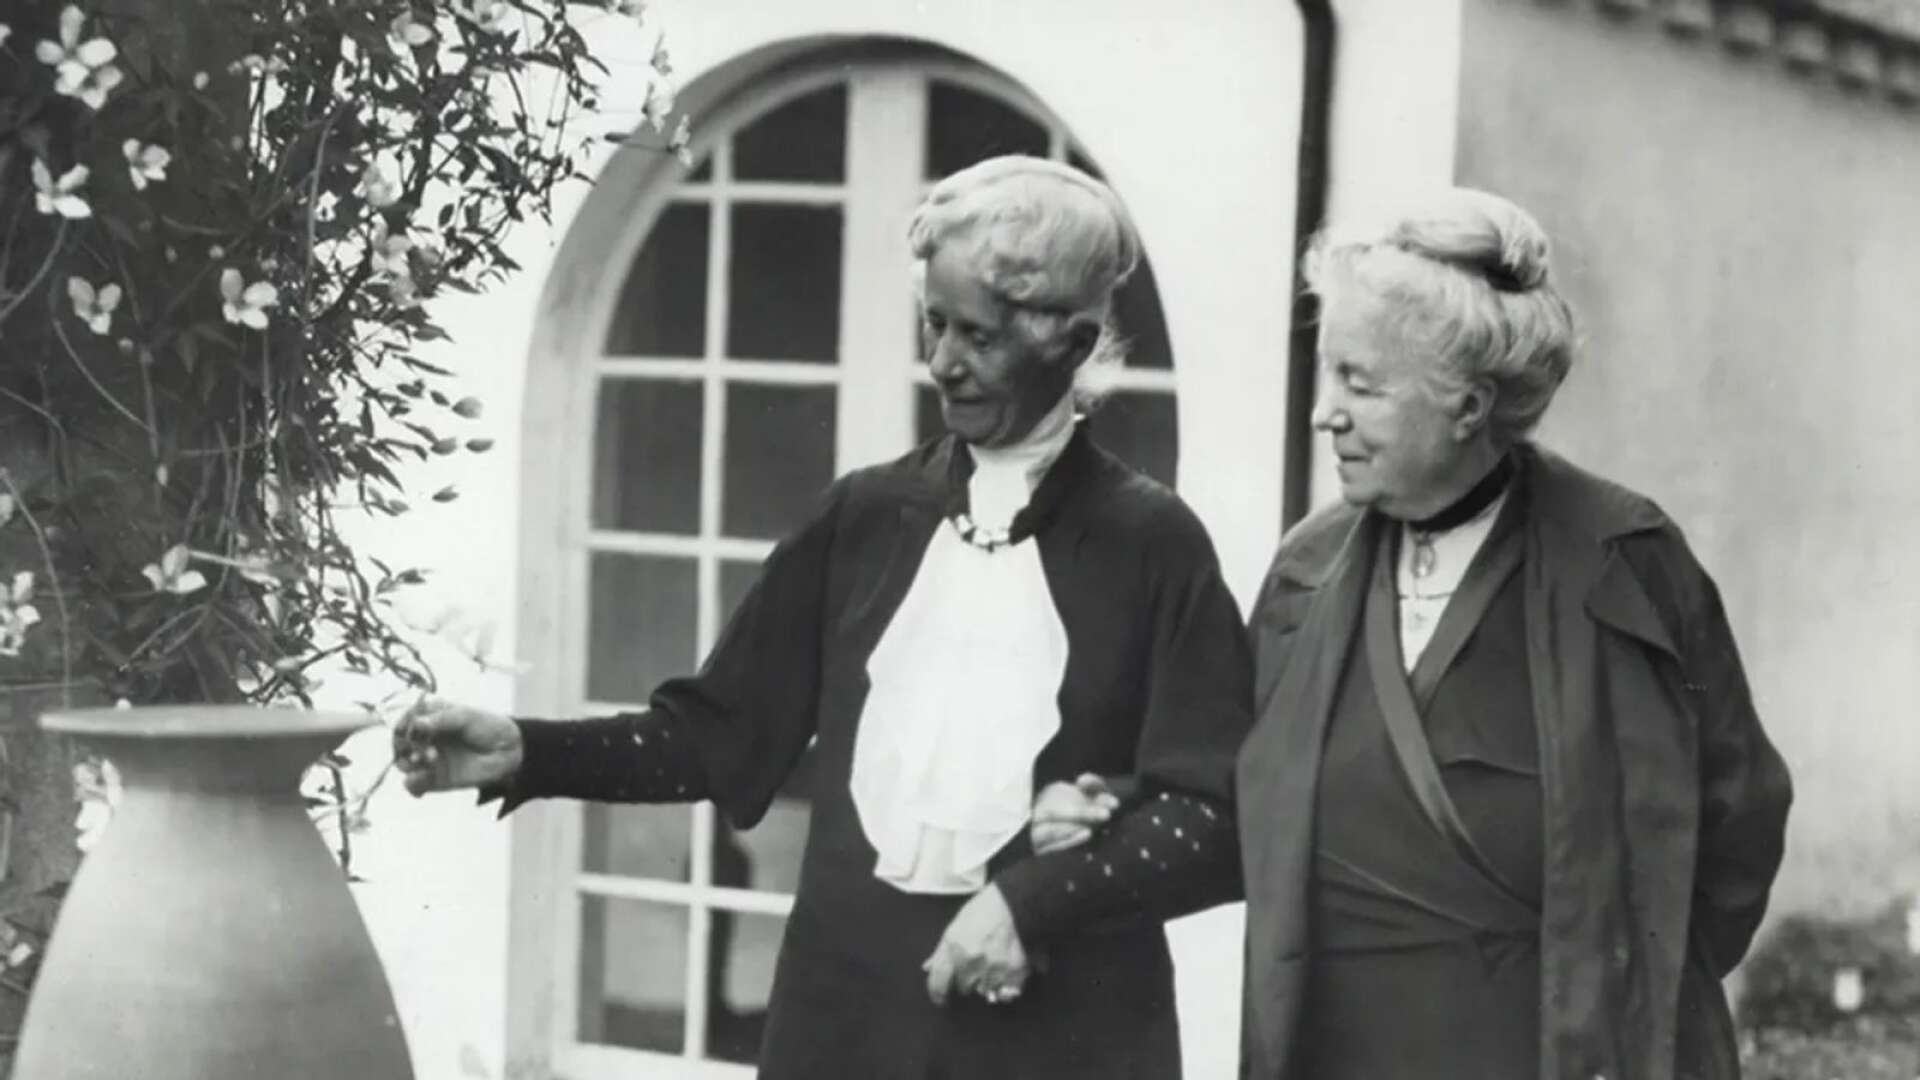 Henriette Coyet, slottsfru på Torup, var god vän med Selma Lagerlöf. Här ses de på Torups slottsgård.